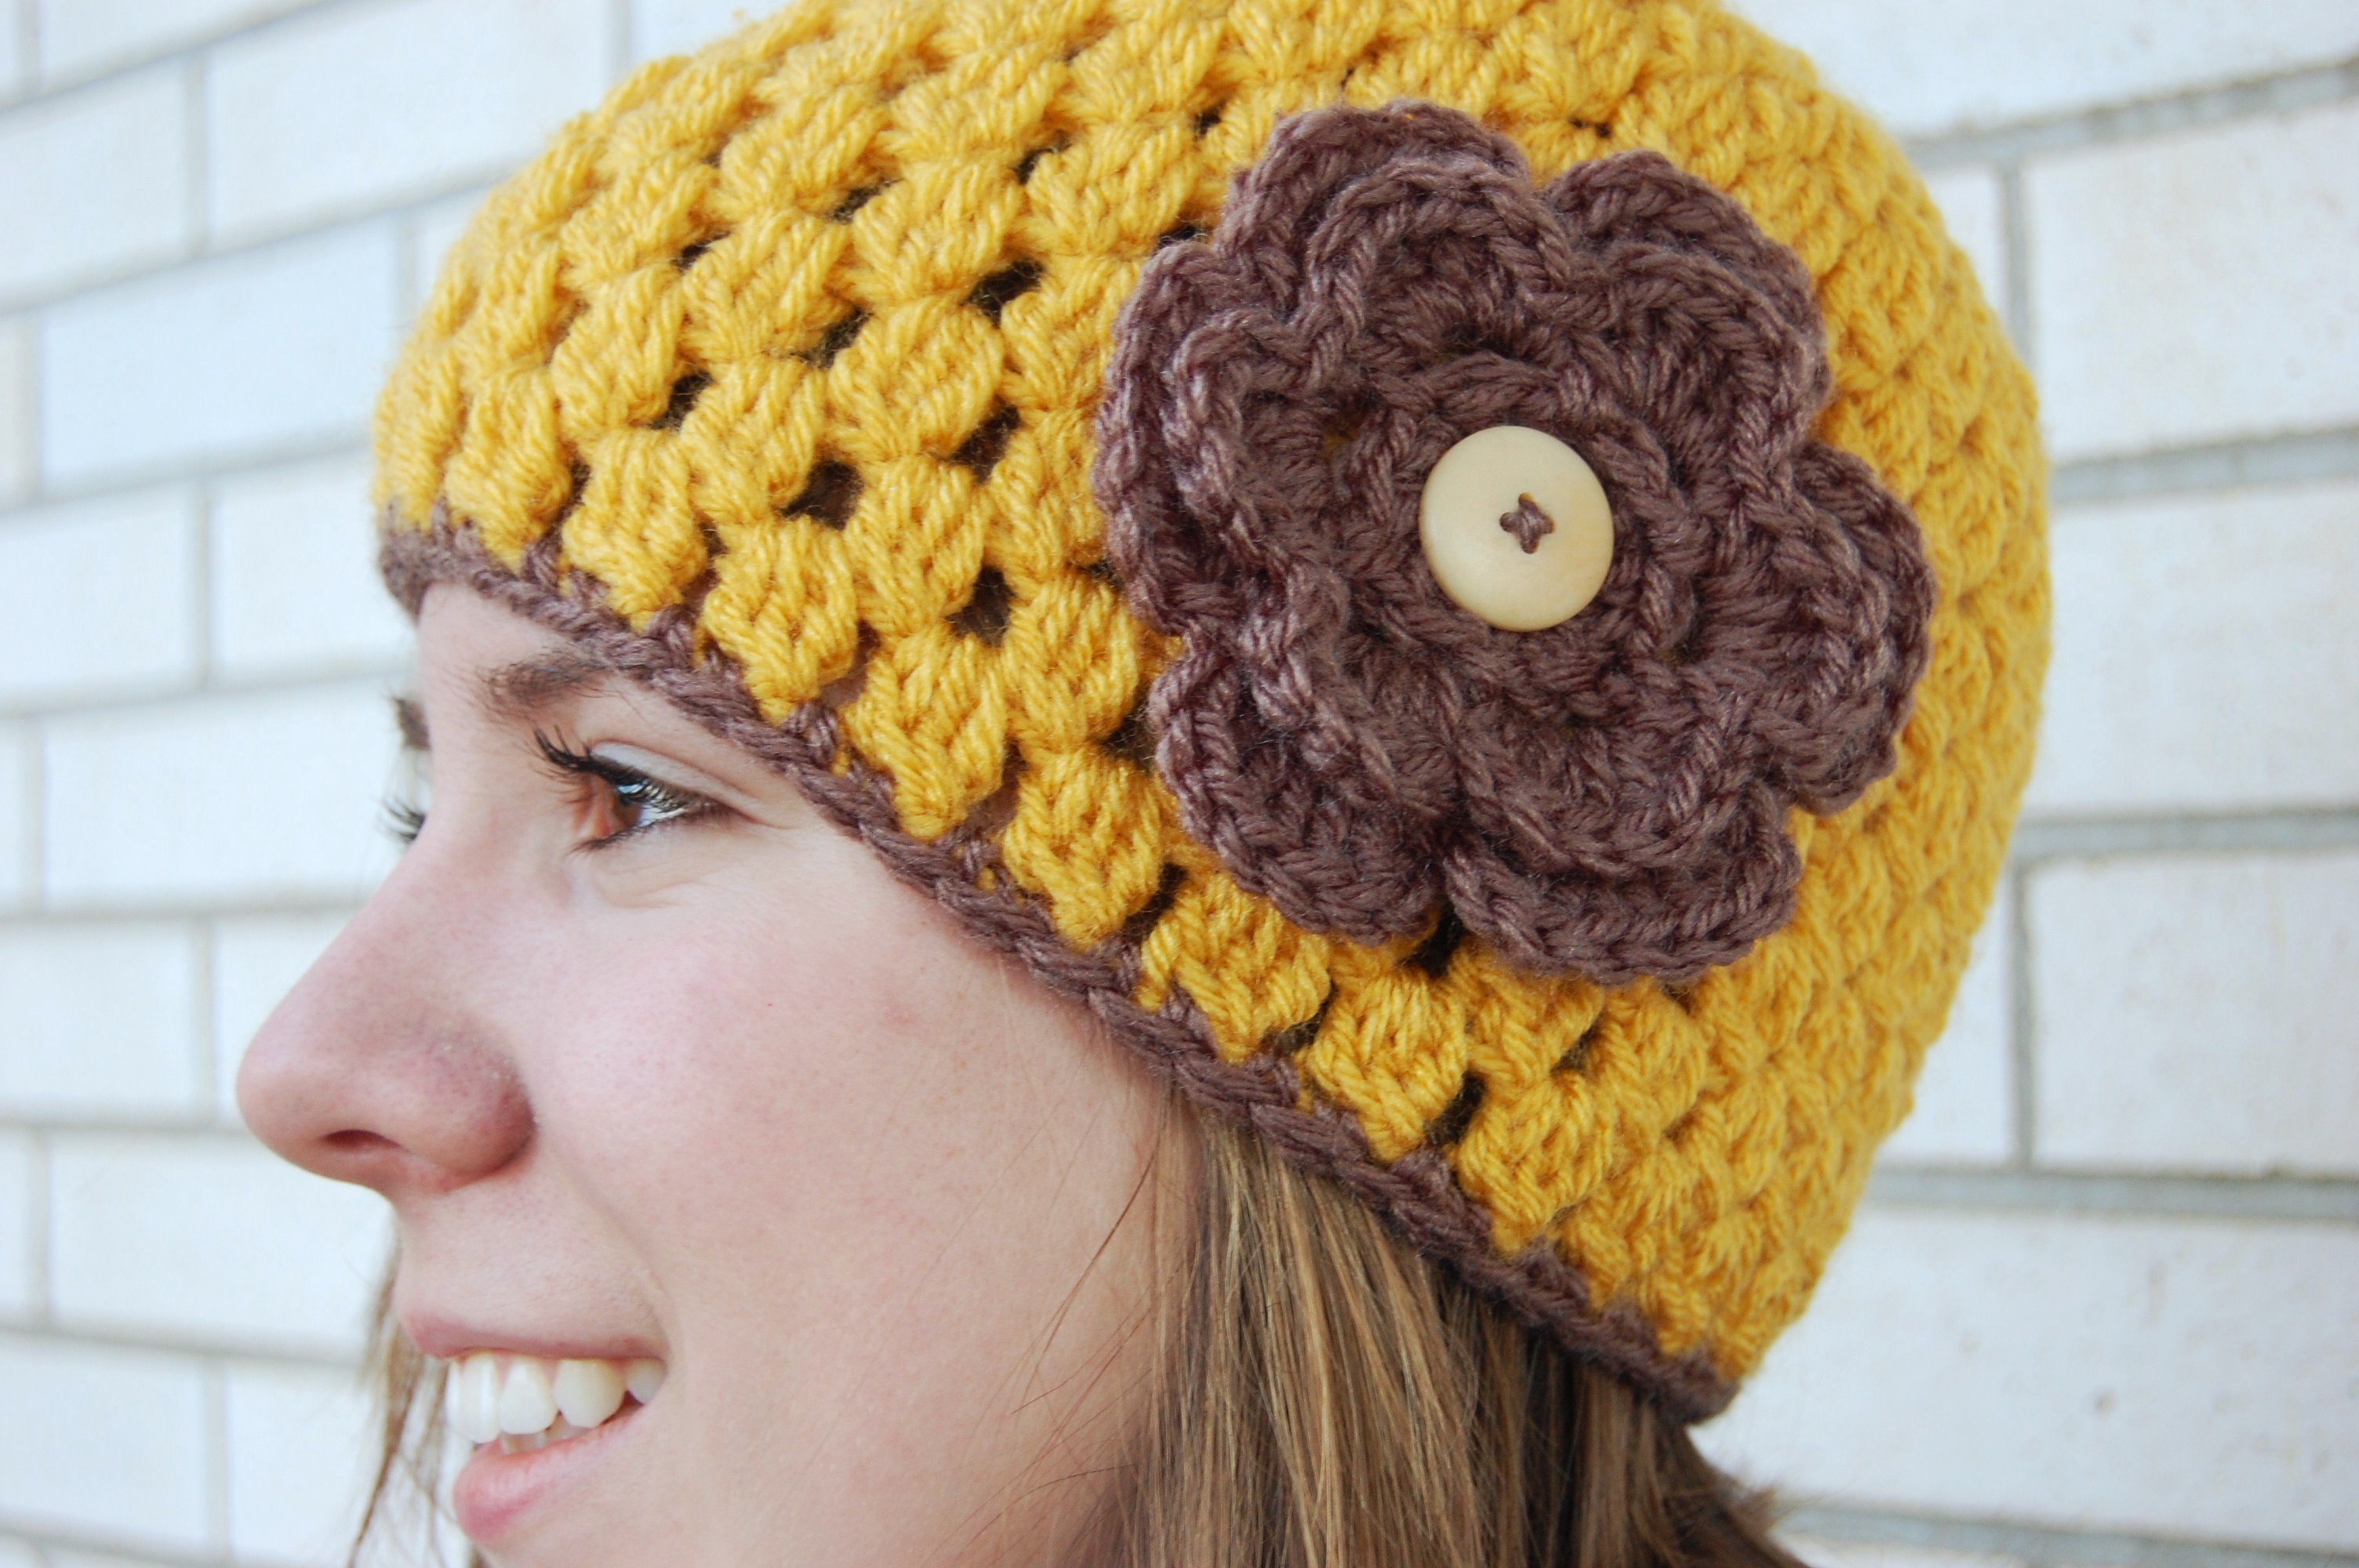 crocheting-patterns-hats-free-patterns